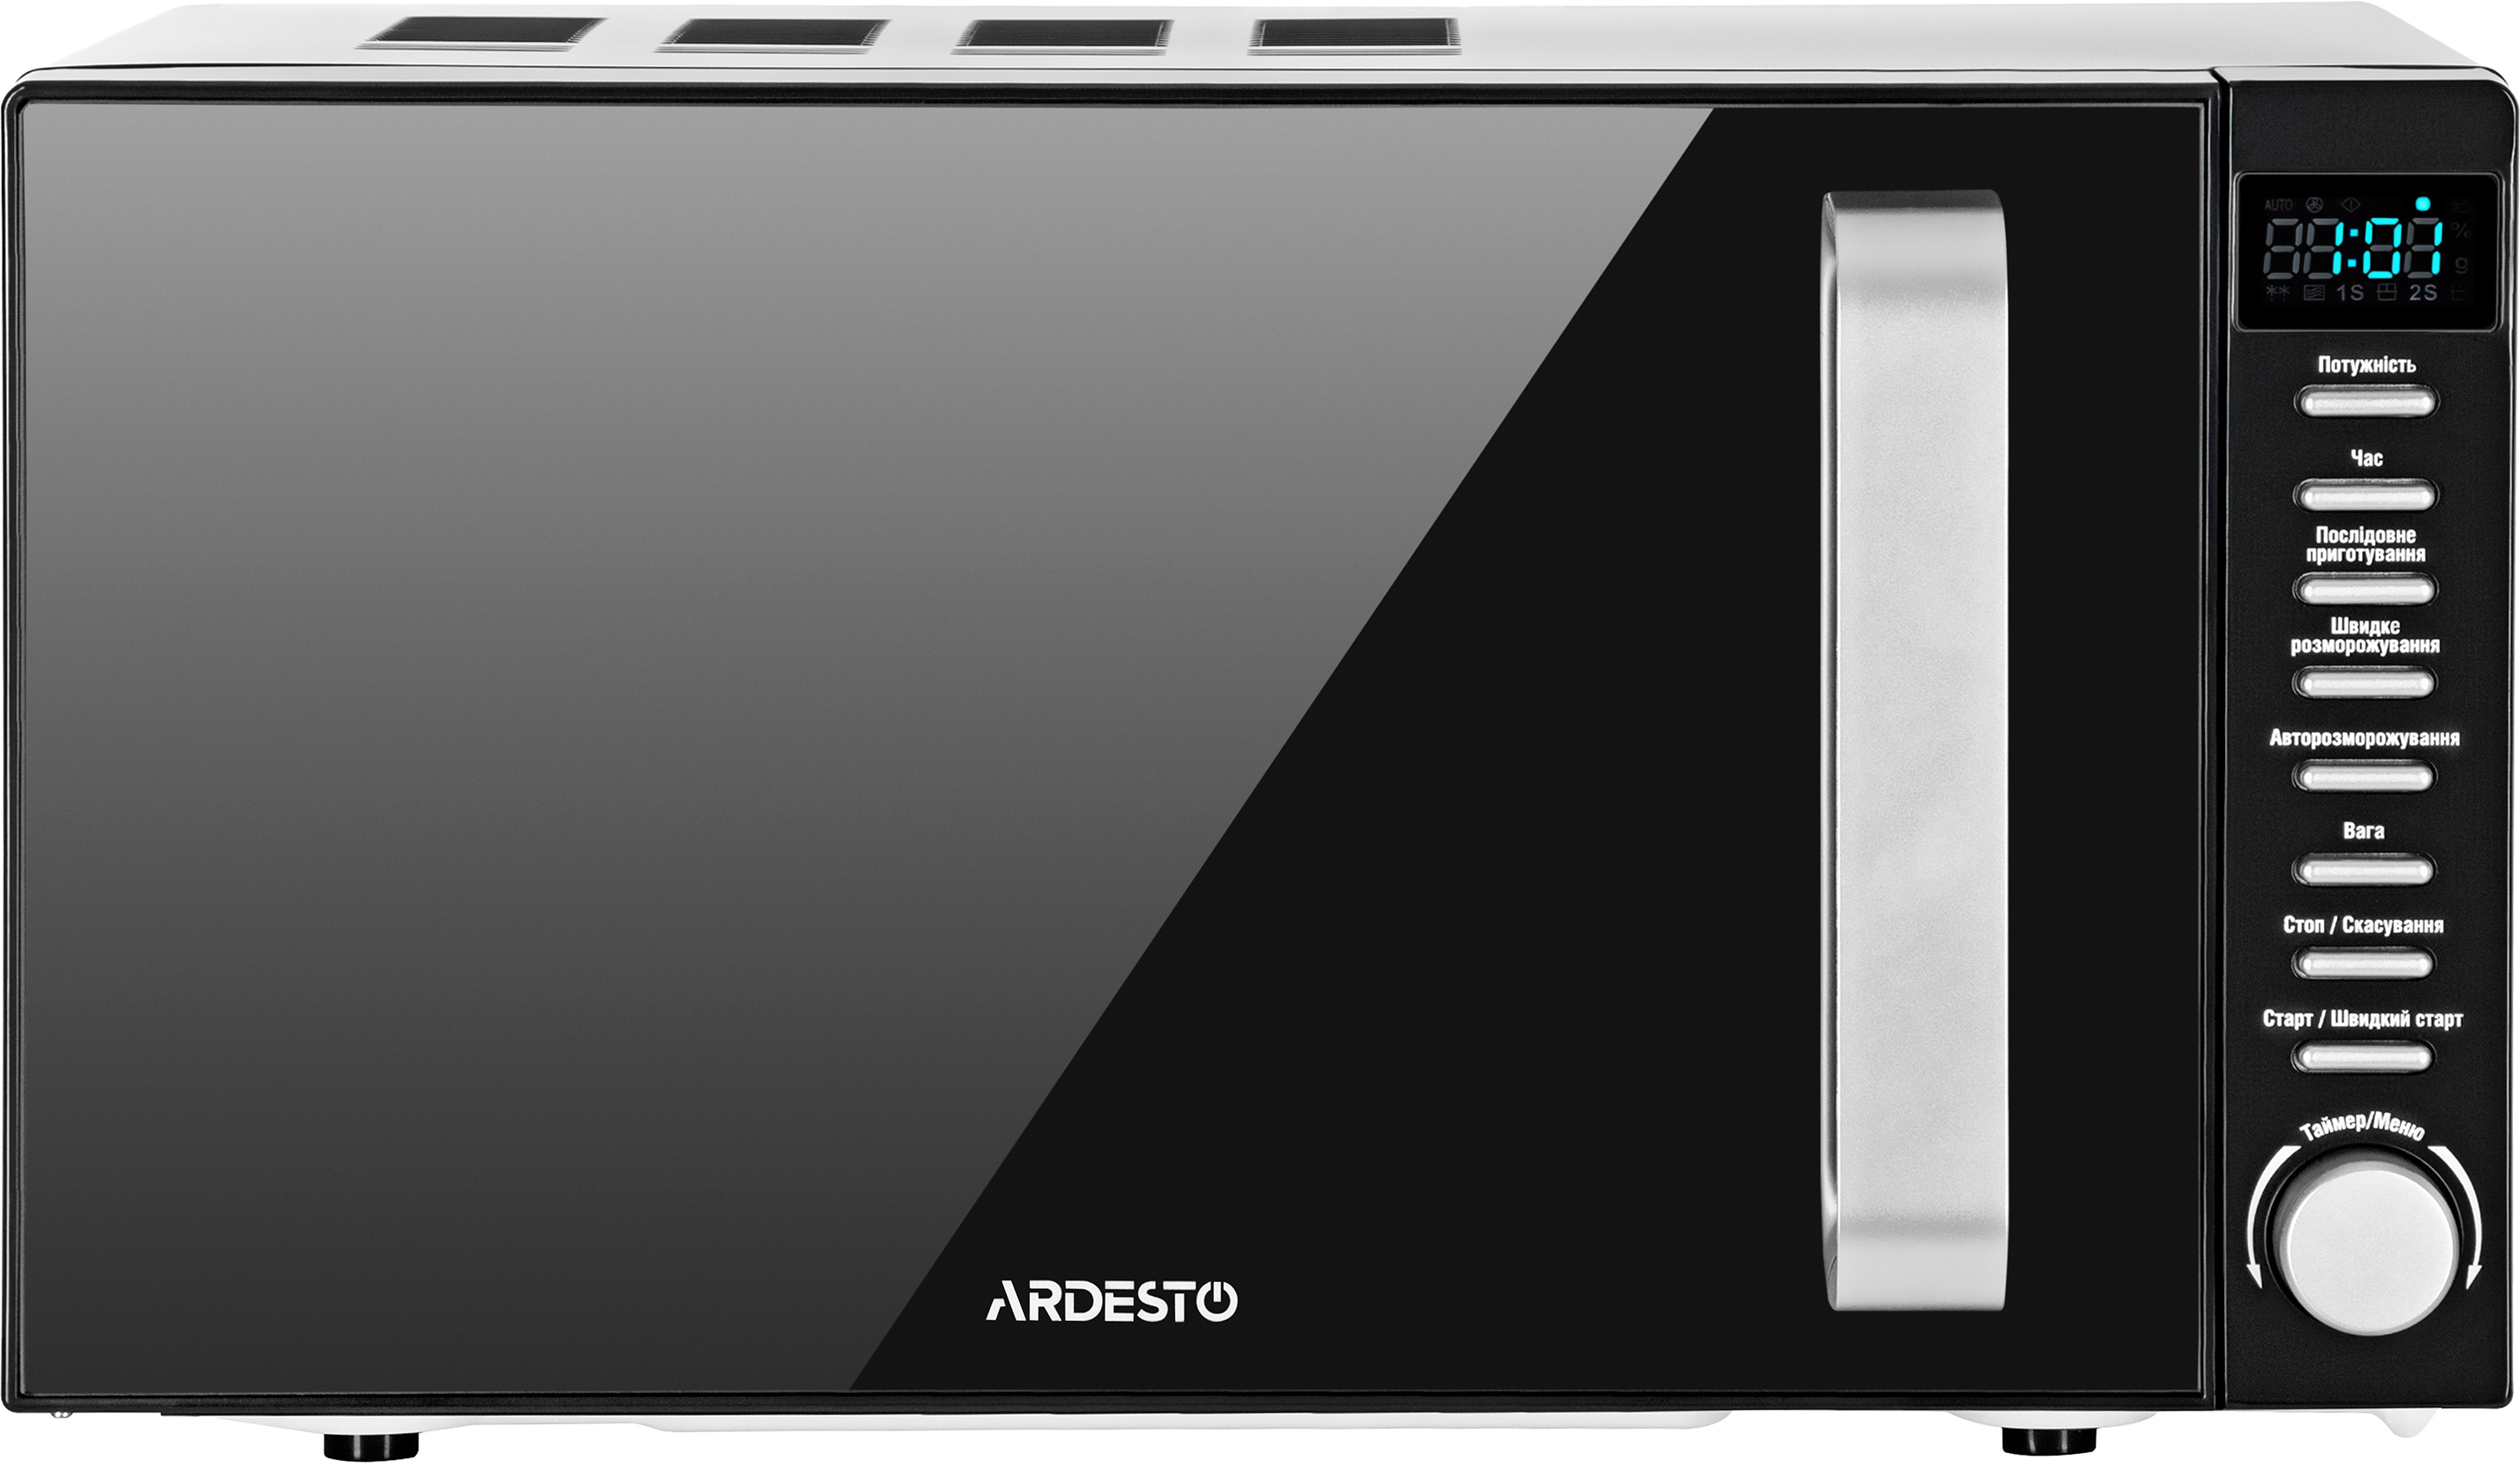 Микроволновая печь Ardesto GO-E845GB цена 3099.00 грн - фотография 2